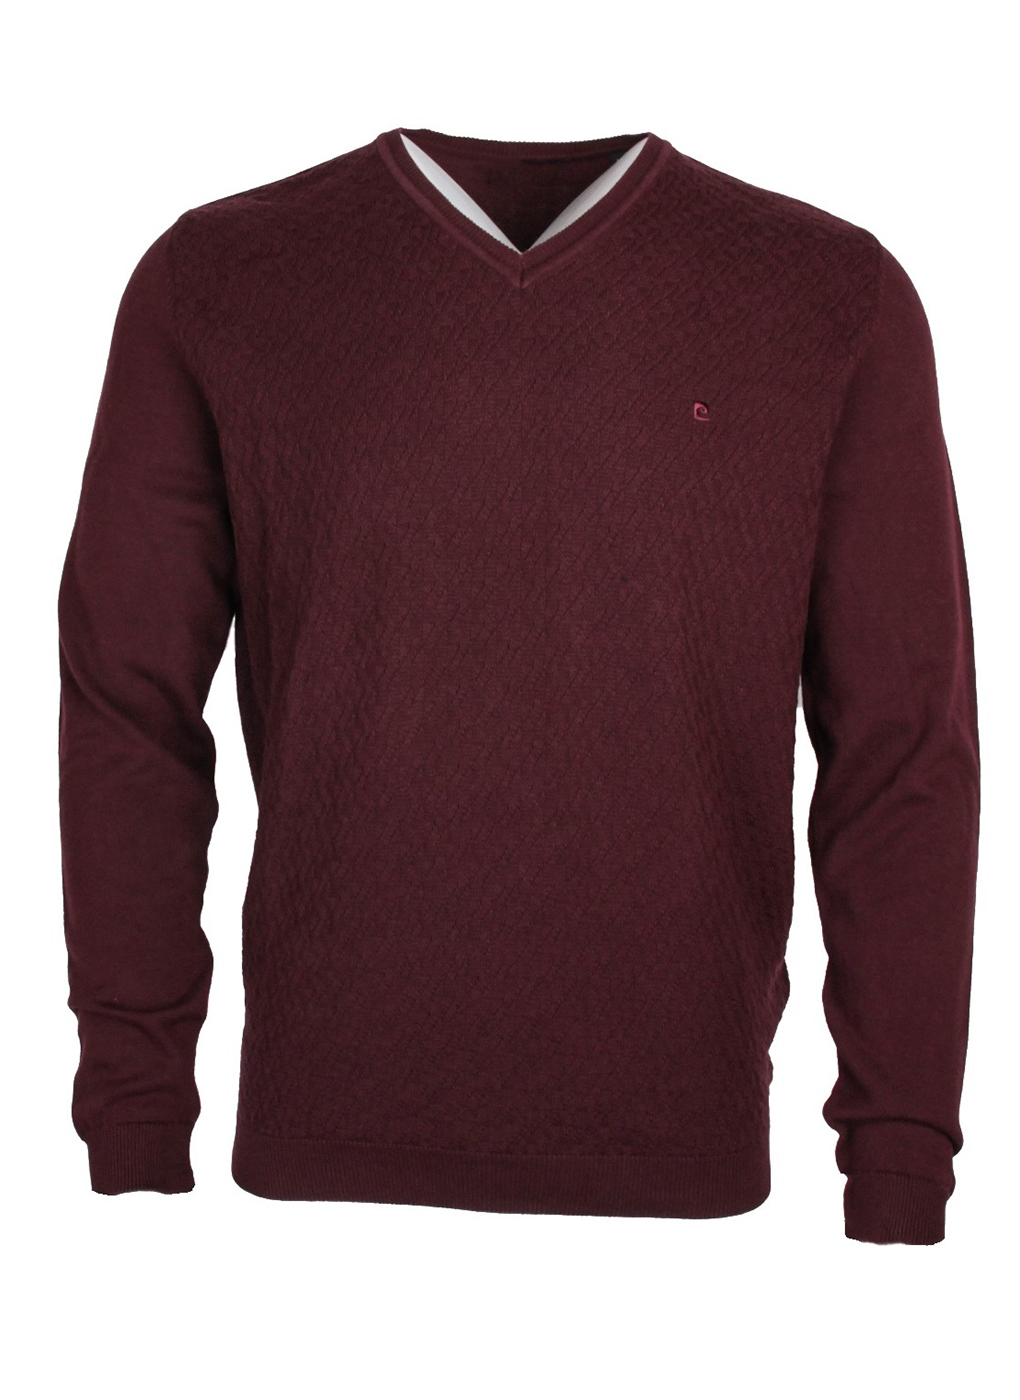 Бордовый свитер мужской